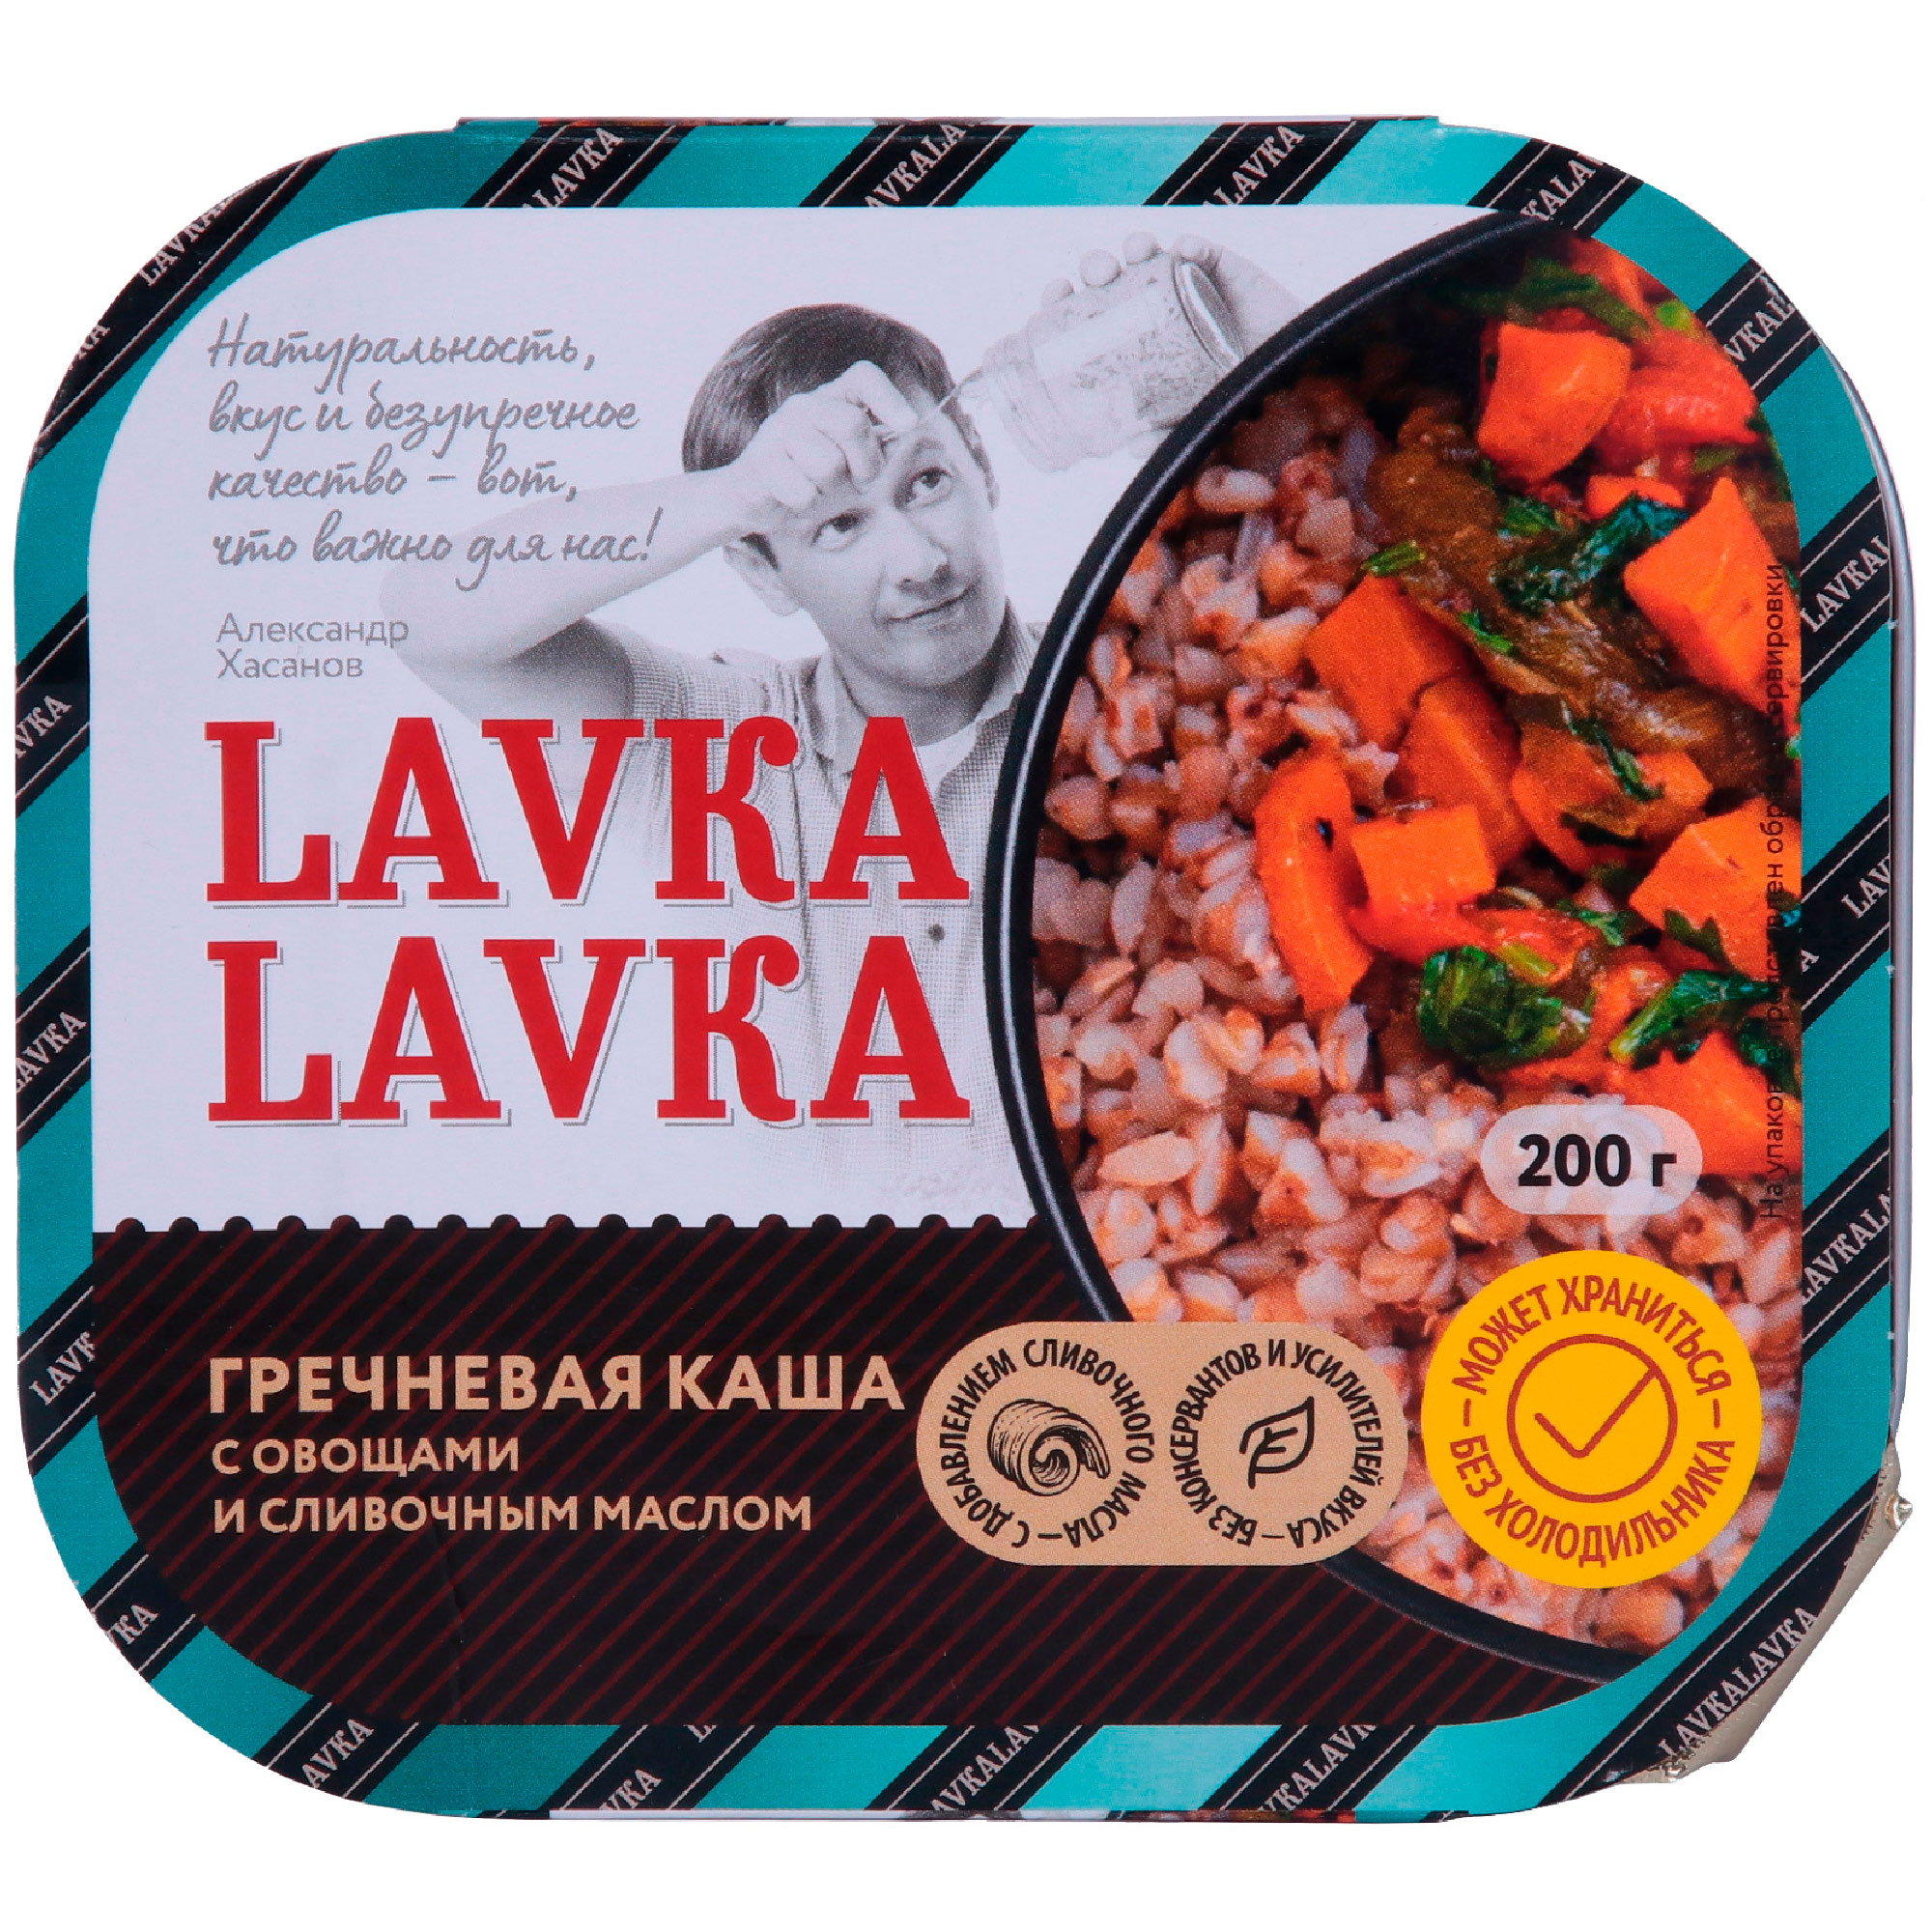 Каша гречневая LavkaLavka с овощами и сливочным маслом, 200 г лук репчатый штуттгартер ризен седек